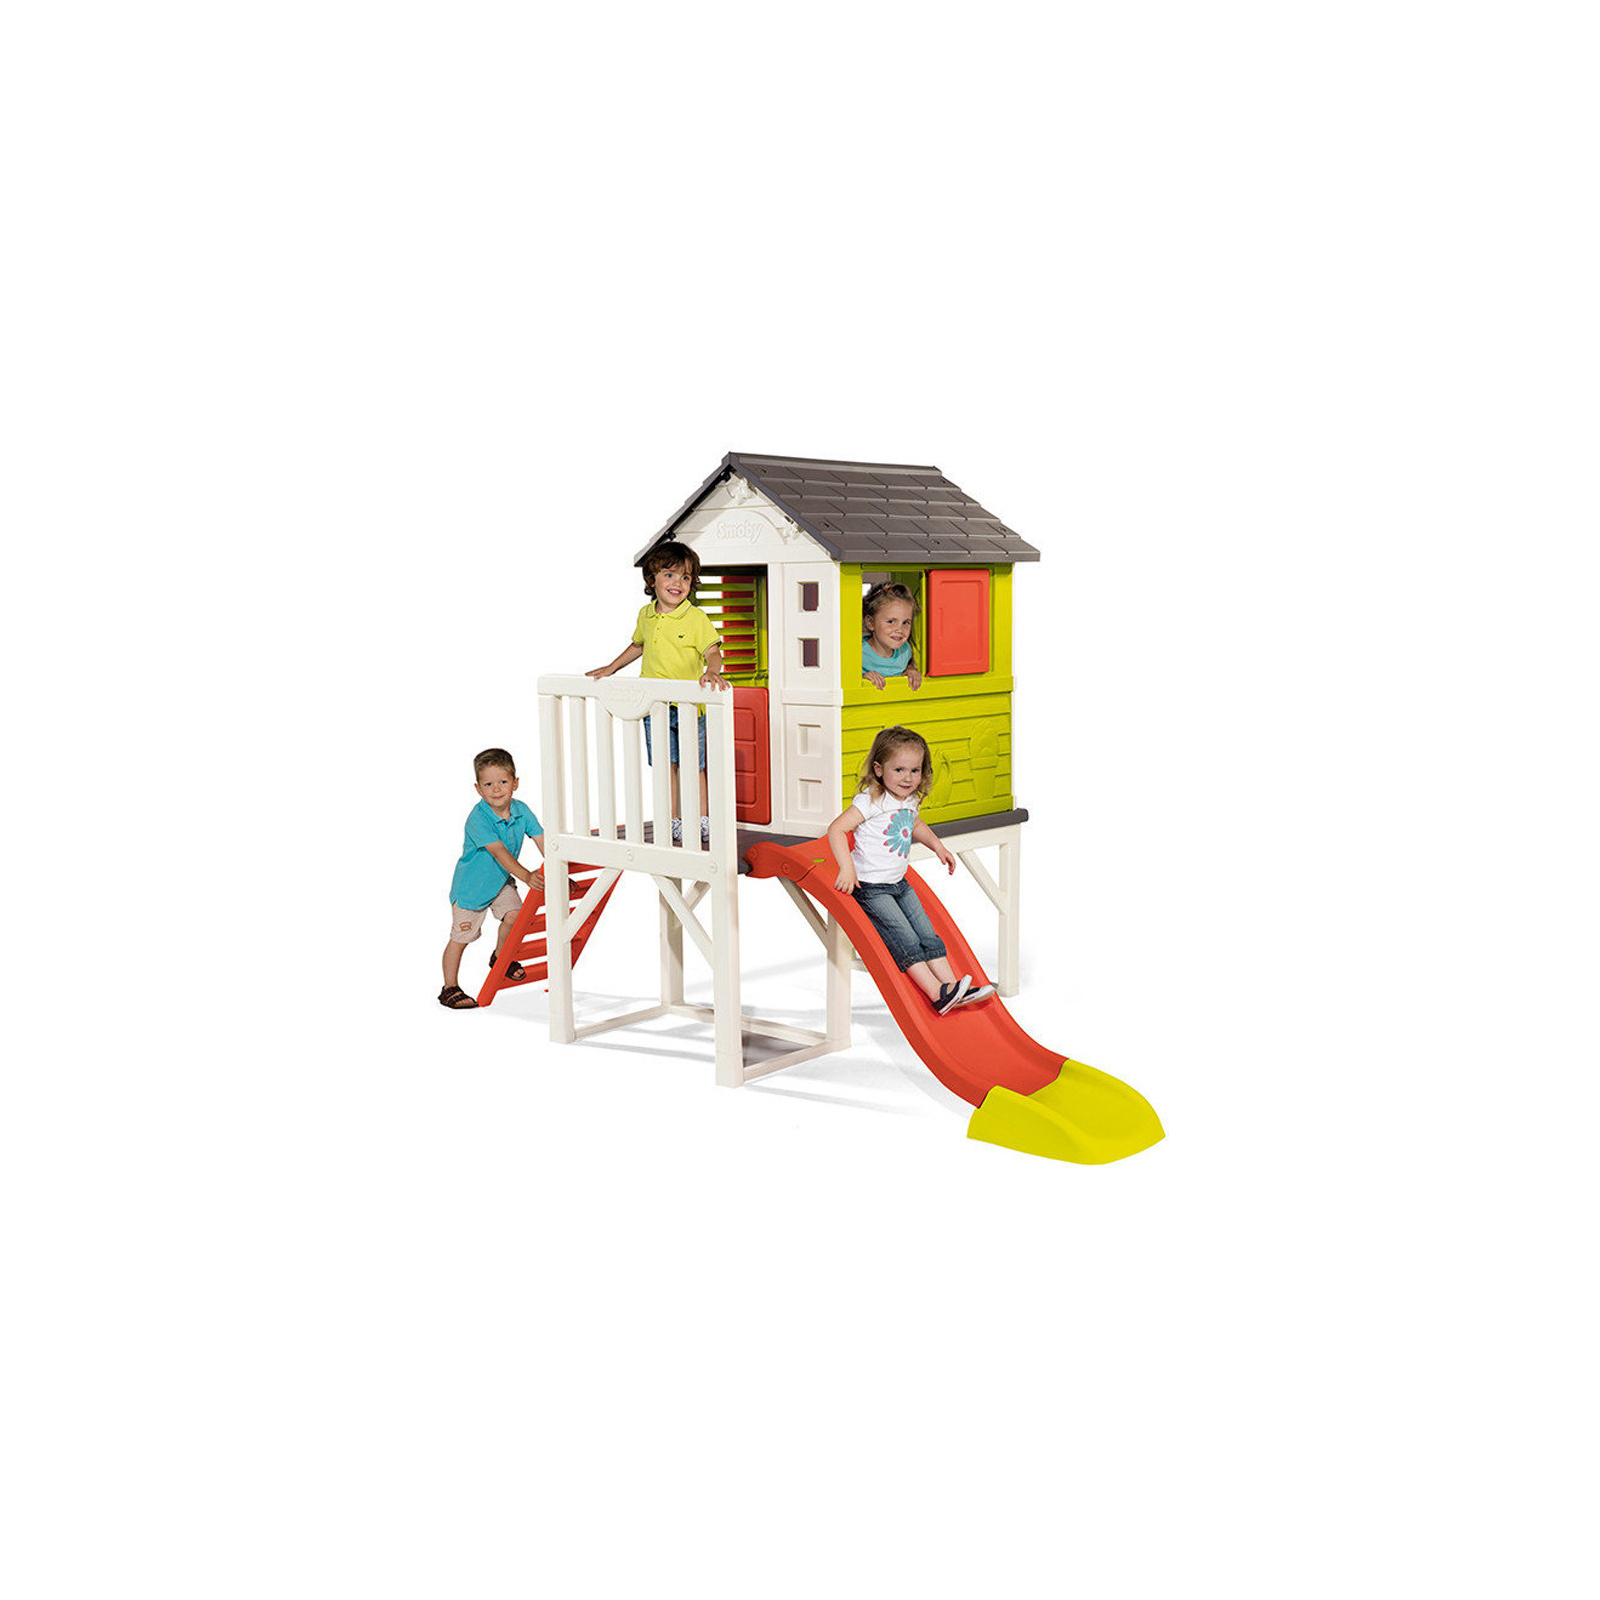 Игровой домик Smoby Домик на опорах Летний отдых (810800) изображение 3